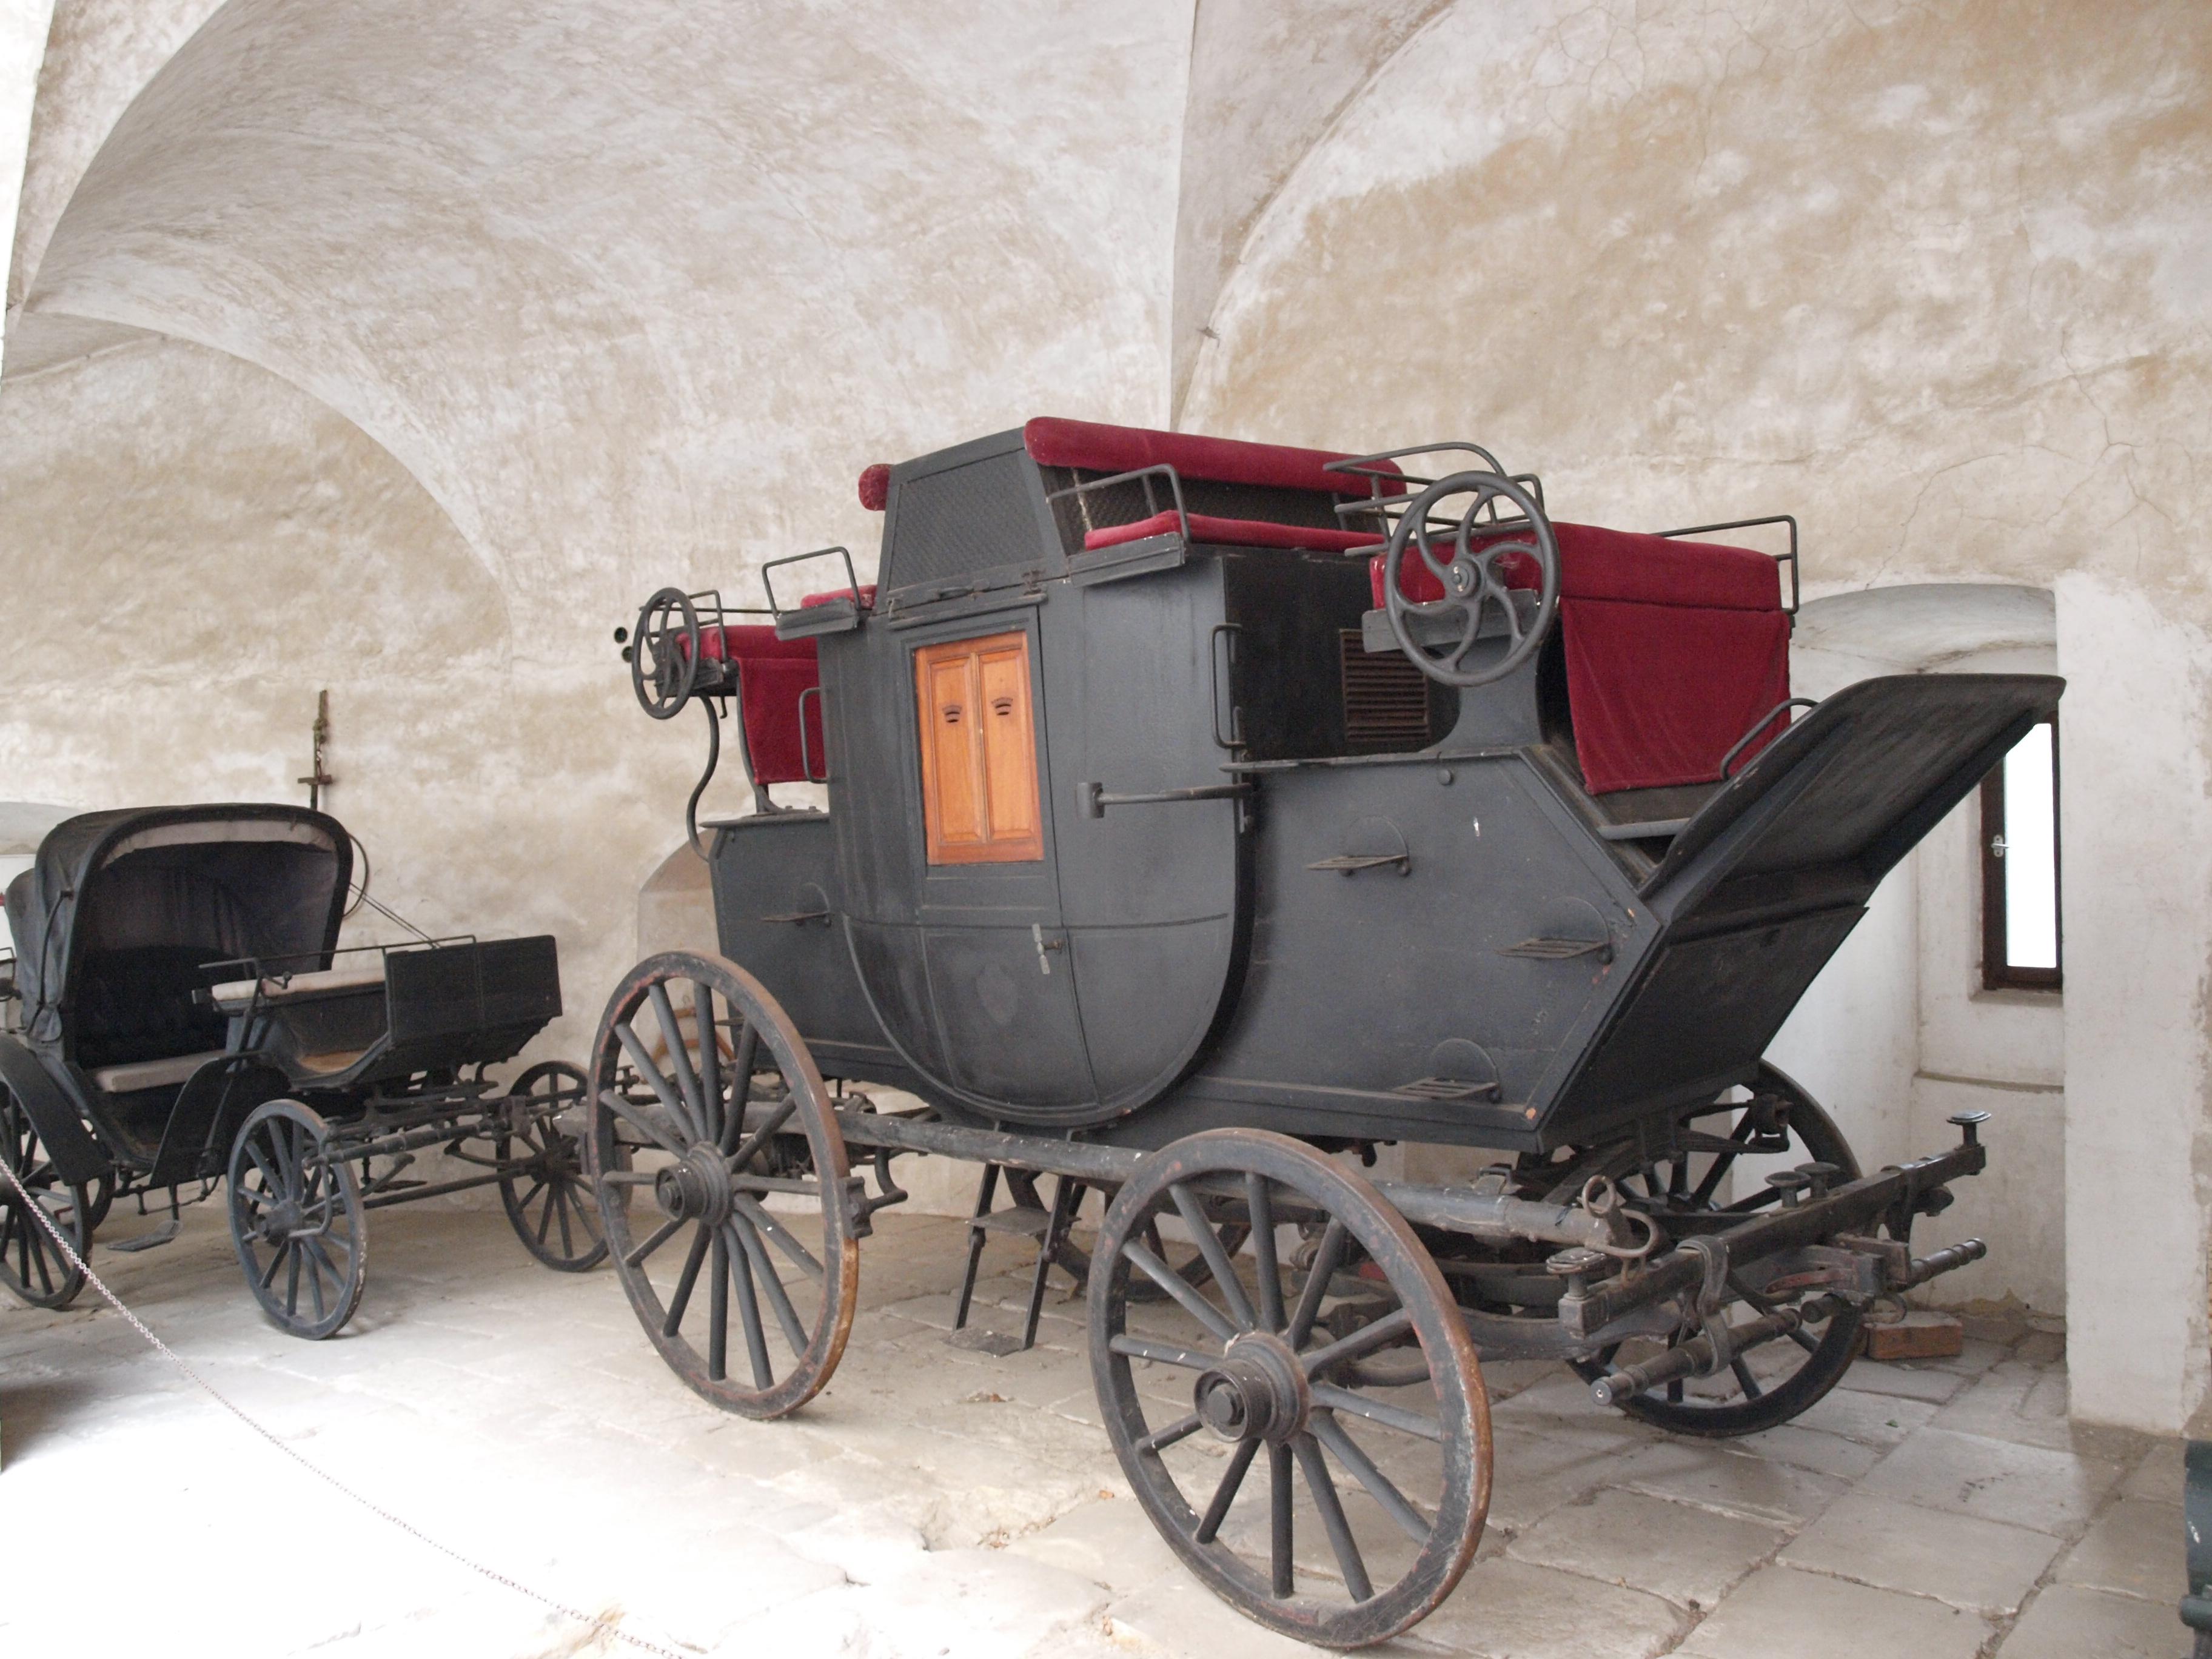 STEINKELLERKA - kurierka, wieloosobowy pojazd komunikacji pocztowej w Polsce w XIX wieku – patrz: dyliżans